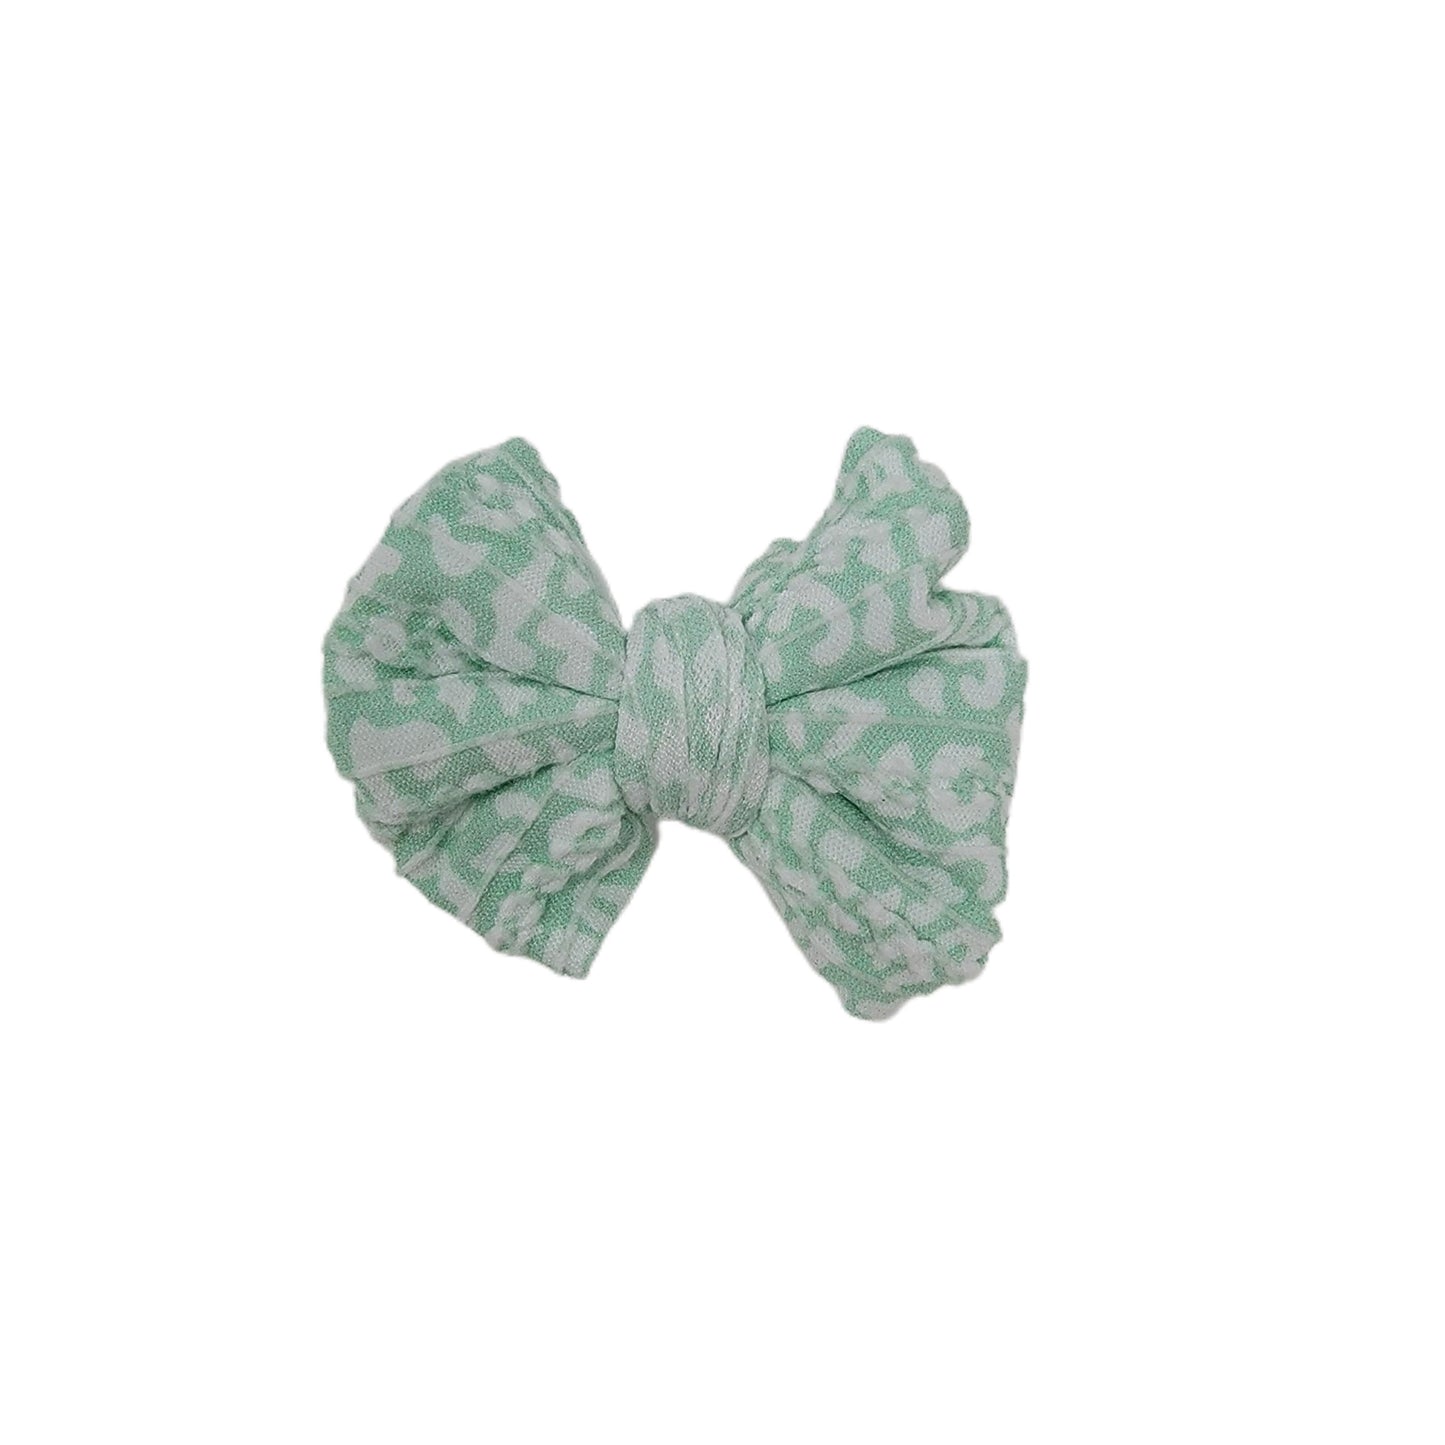 3" Mint Leopard Braid Knit Fabric Bow (pair)